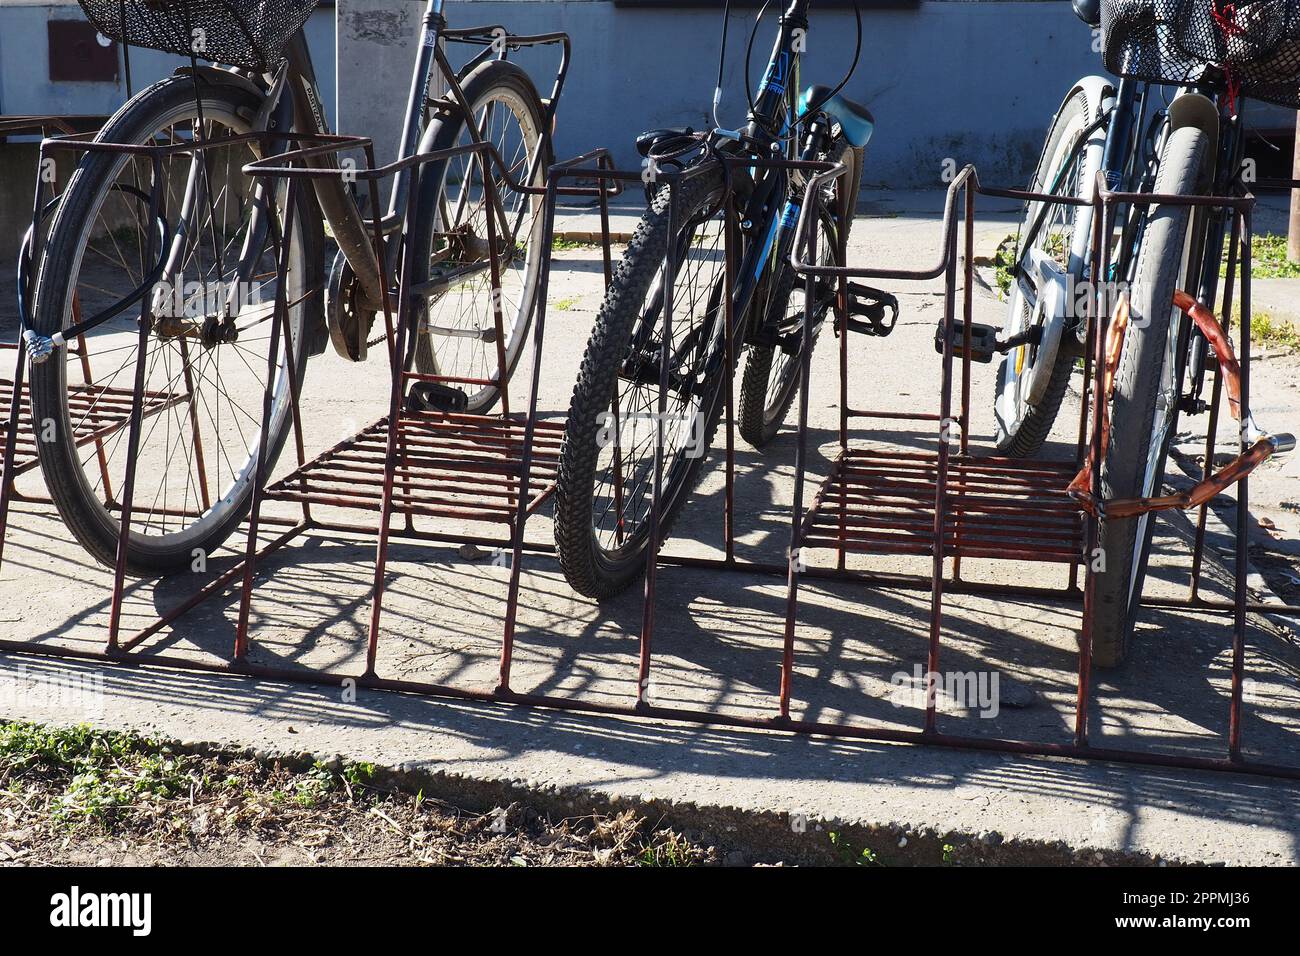 Die Fahrräder sind im Fahrradständer, an eine Metallkonstruktion gebunden. Ökologischer Stadtverkehr. Einsparungen beim Transport in Krisensituationen. Sremska Mitrovica, Serbien, 24. März 2022. Fahrräder auf der Straße. Stockfoto